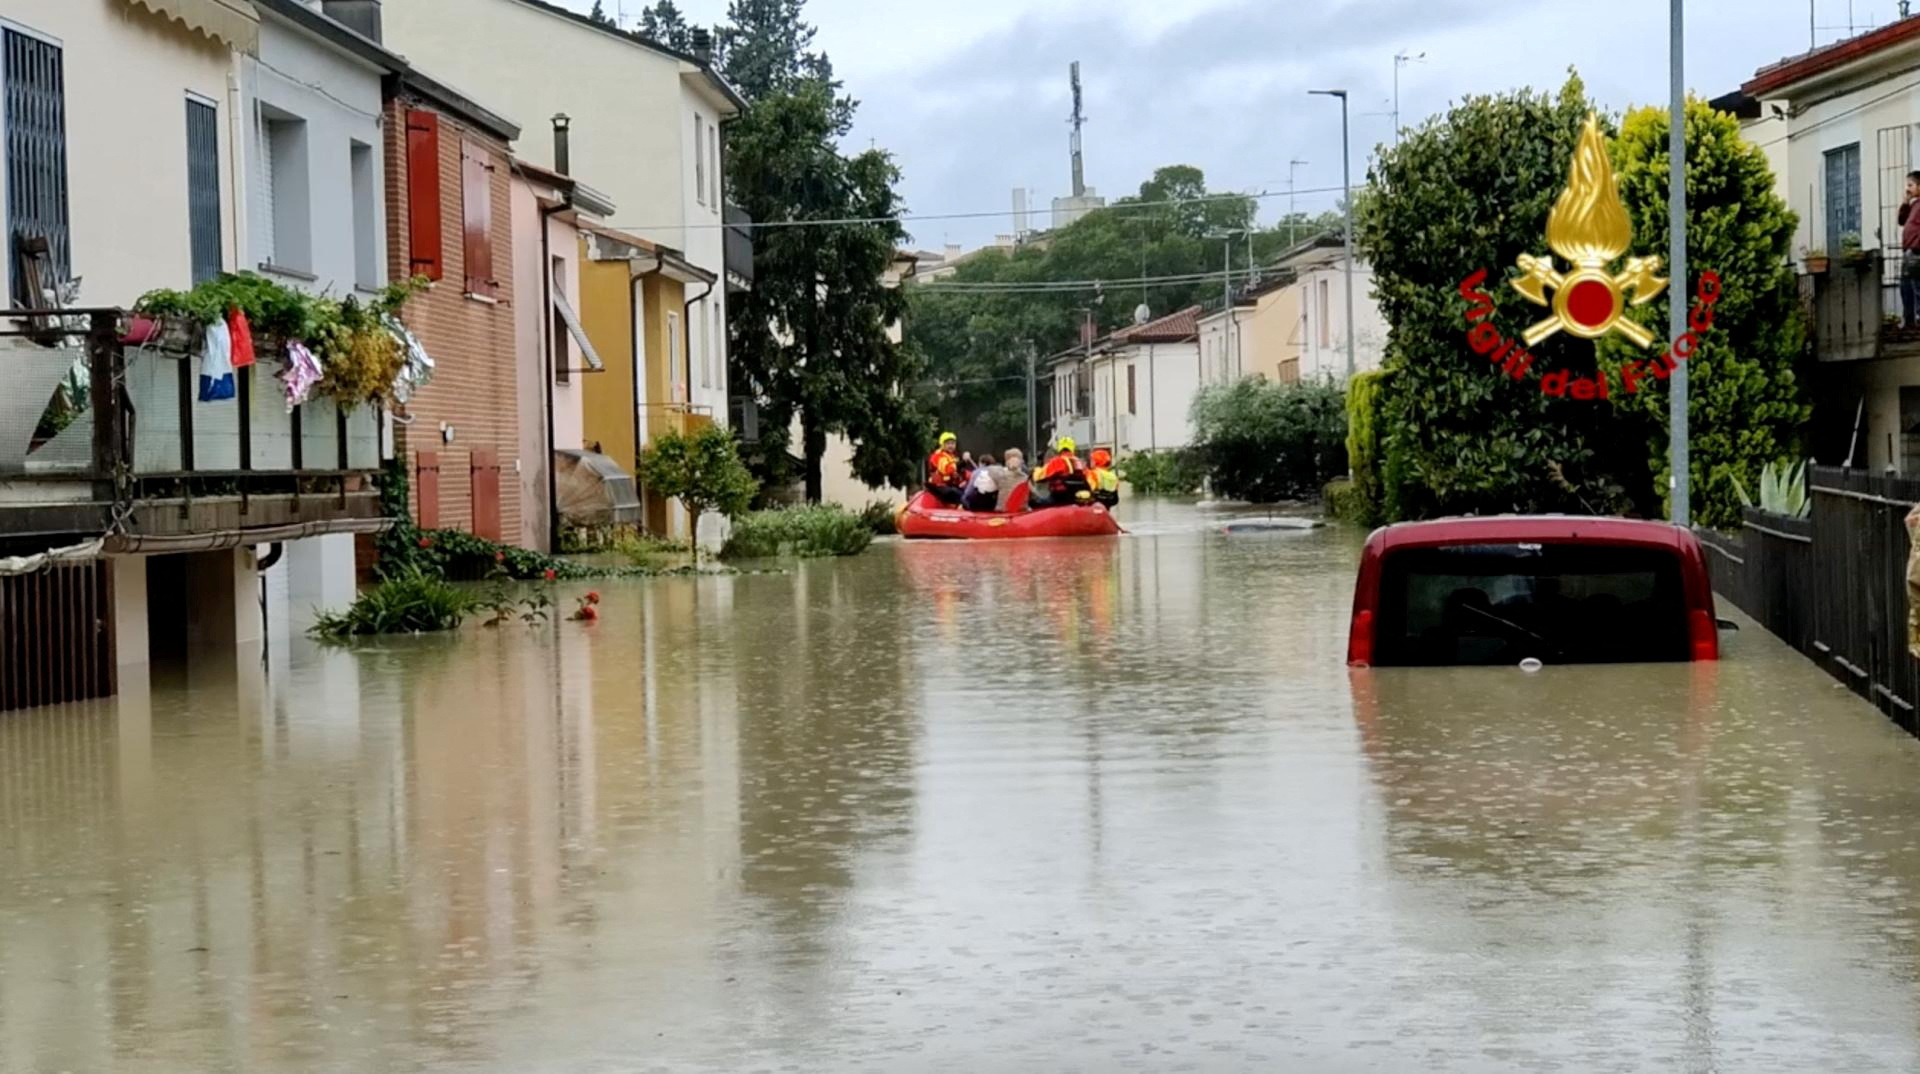 setidaknya delapan tewas dalam banjir di Italia utara;  Penundaan Grand Prix |  Berita Cuaca